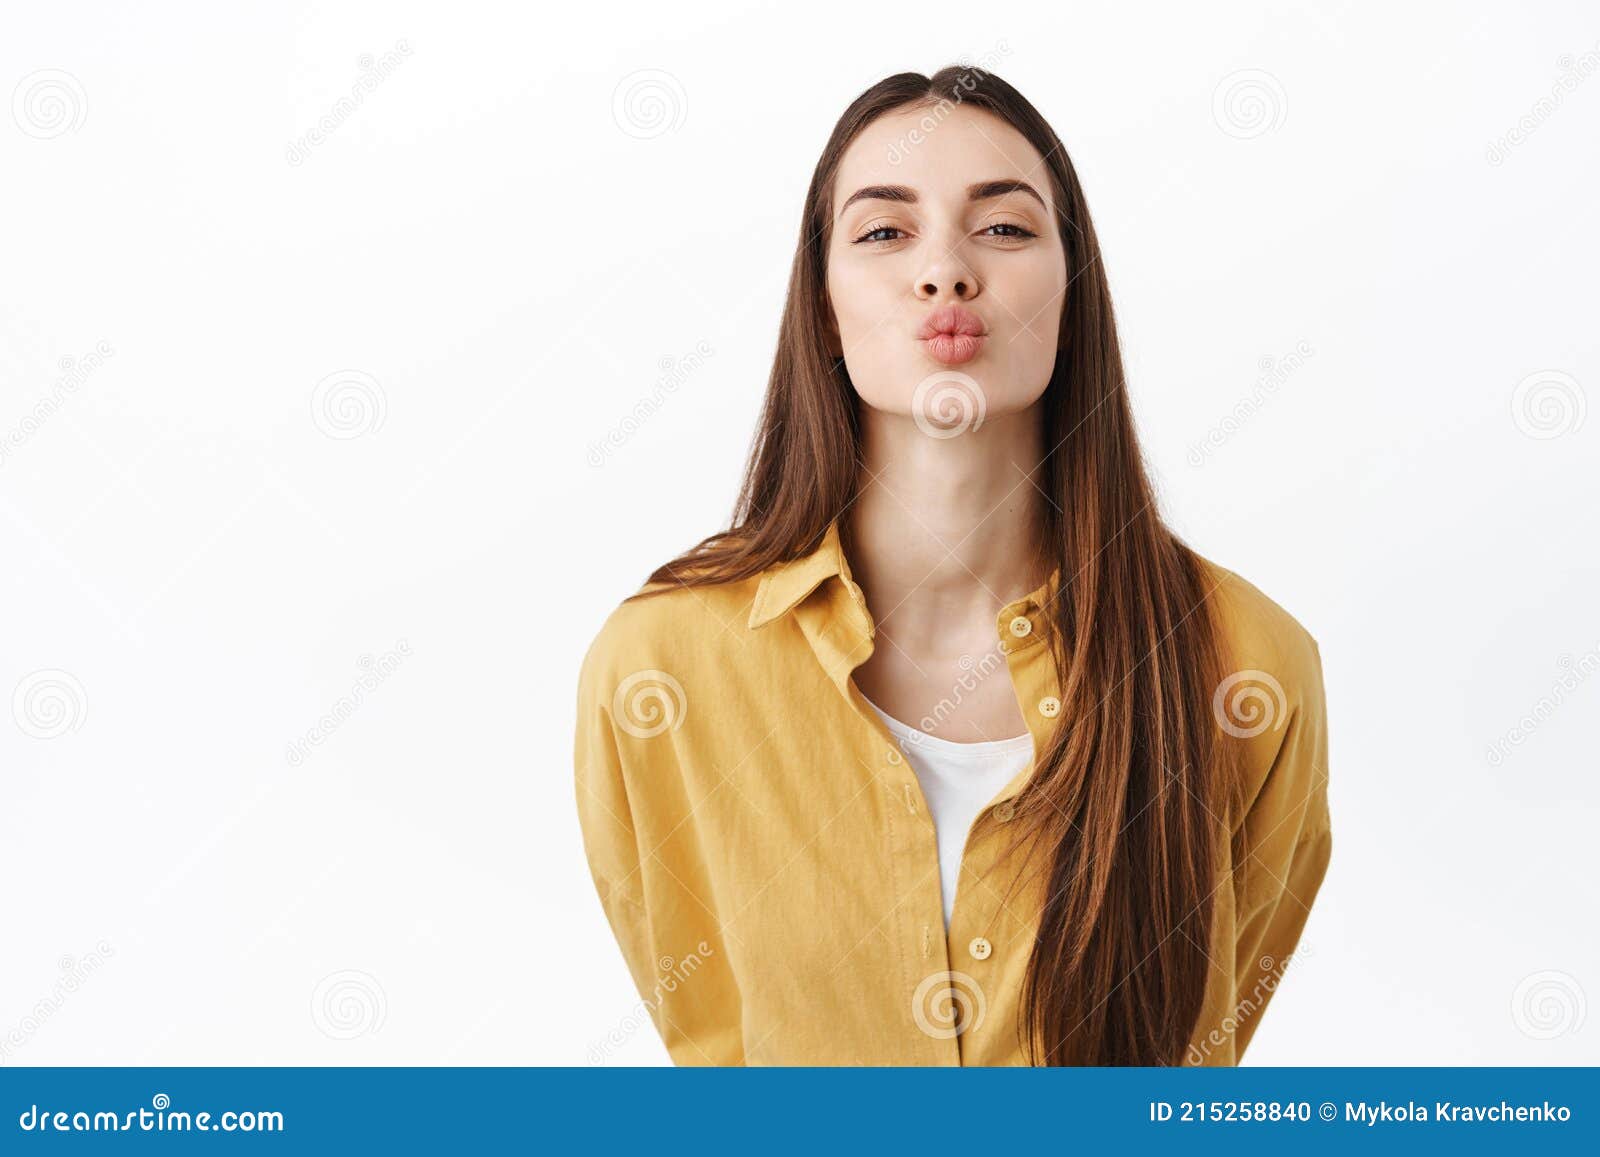 美少女模特与同学伸舌嘴的近照 库存图片. 图片 包括有 疯狂, 快活, 滑稽, 愉快, 长期, 幼稚, 无忧无虑 - 165820759